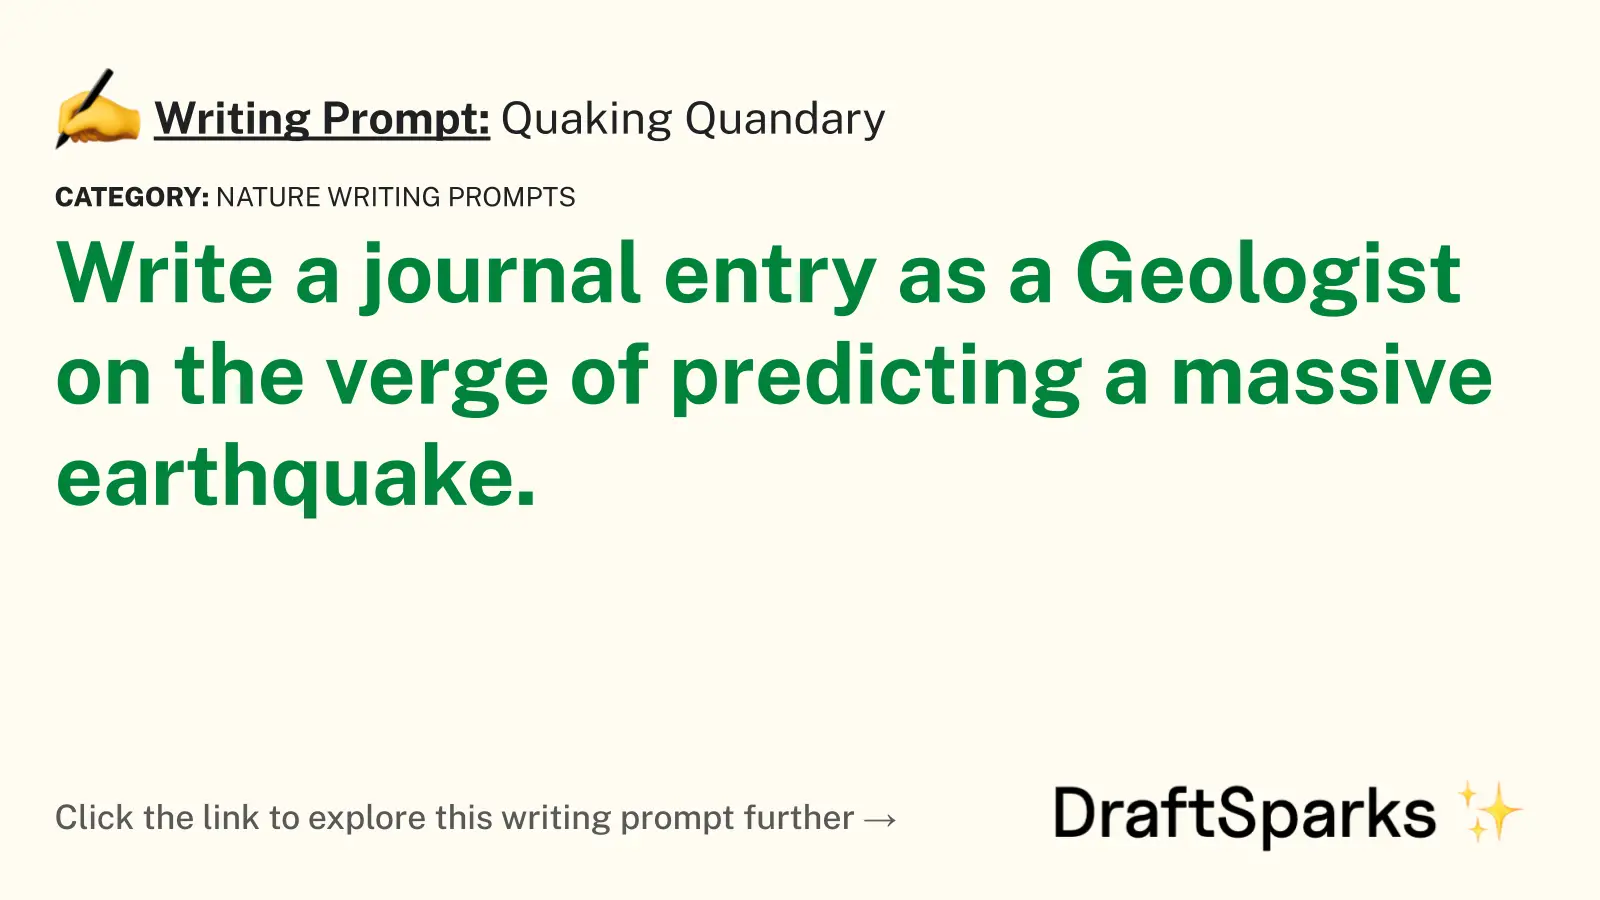 Quaking Quandary